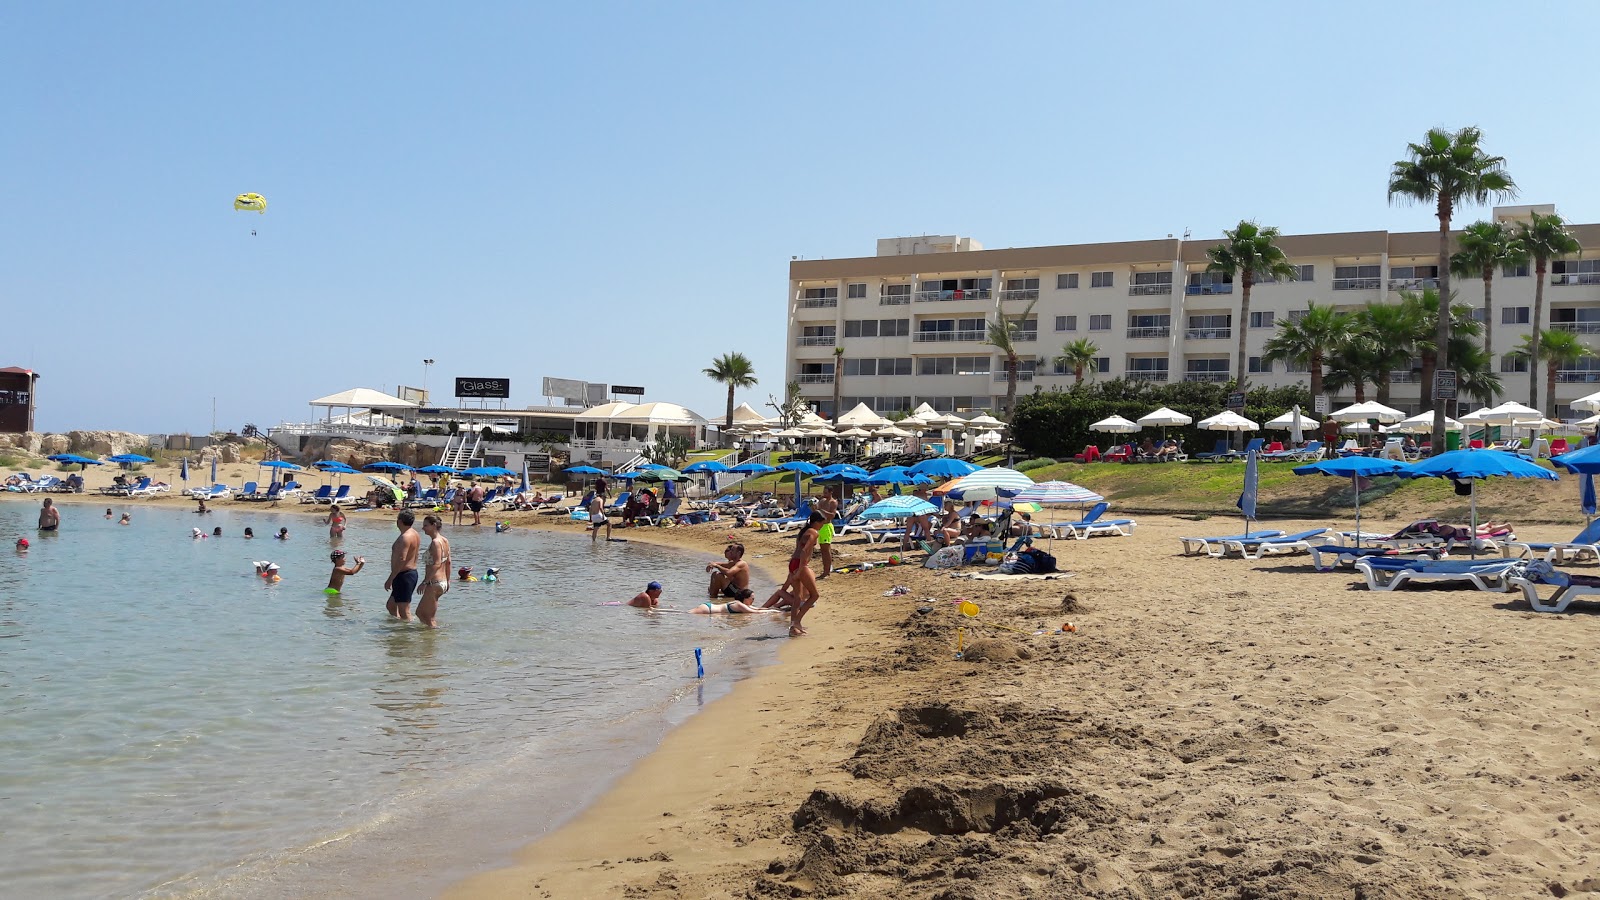 Pernera Plajı'in fotoğrafı imkanlar alanı